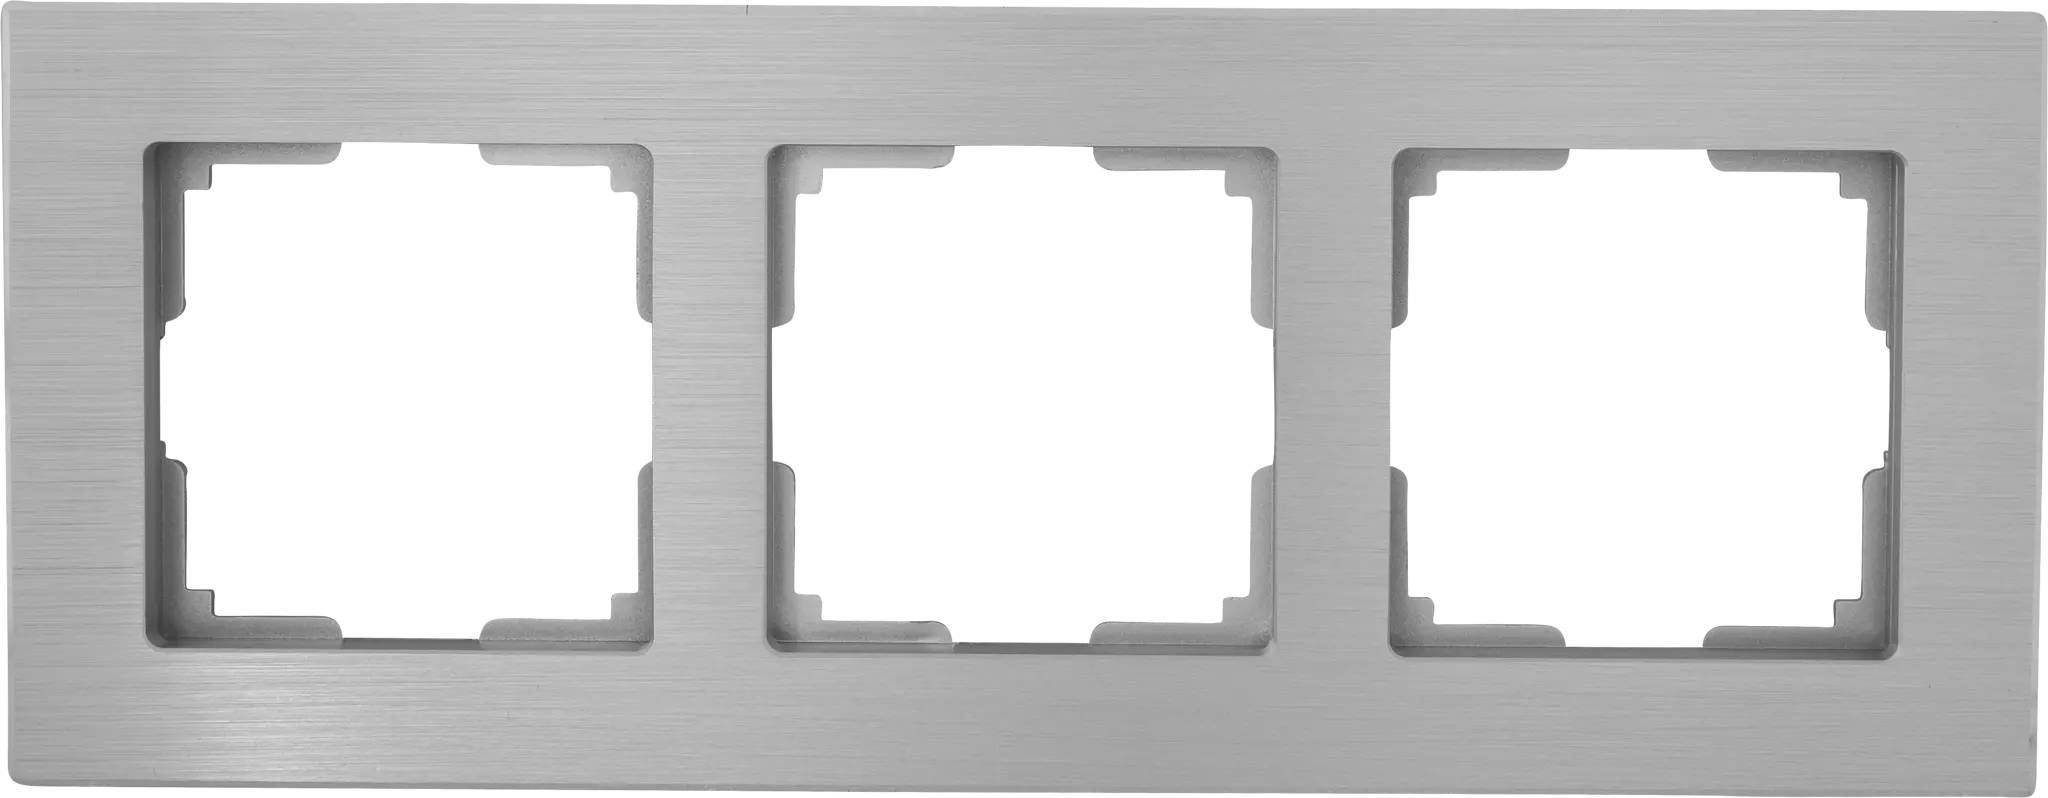 Рамка для розеток и выключателей Werkel Aluminium 3 поста, металл, цвет алюминий рамка на 3 поста werkel aluminium w0031708 4690389158100